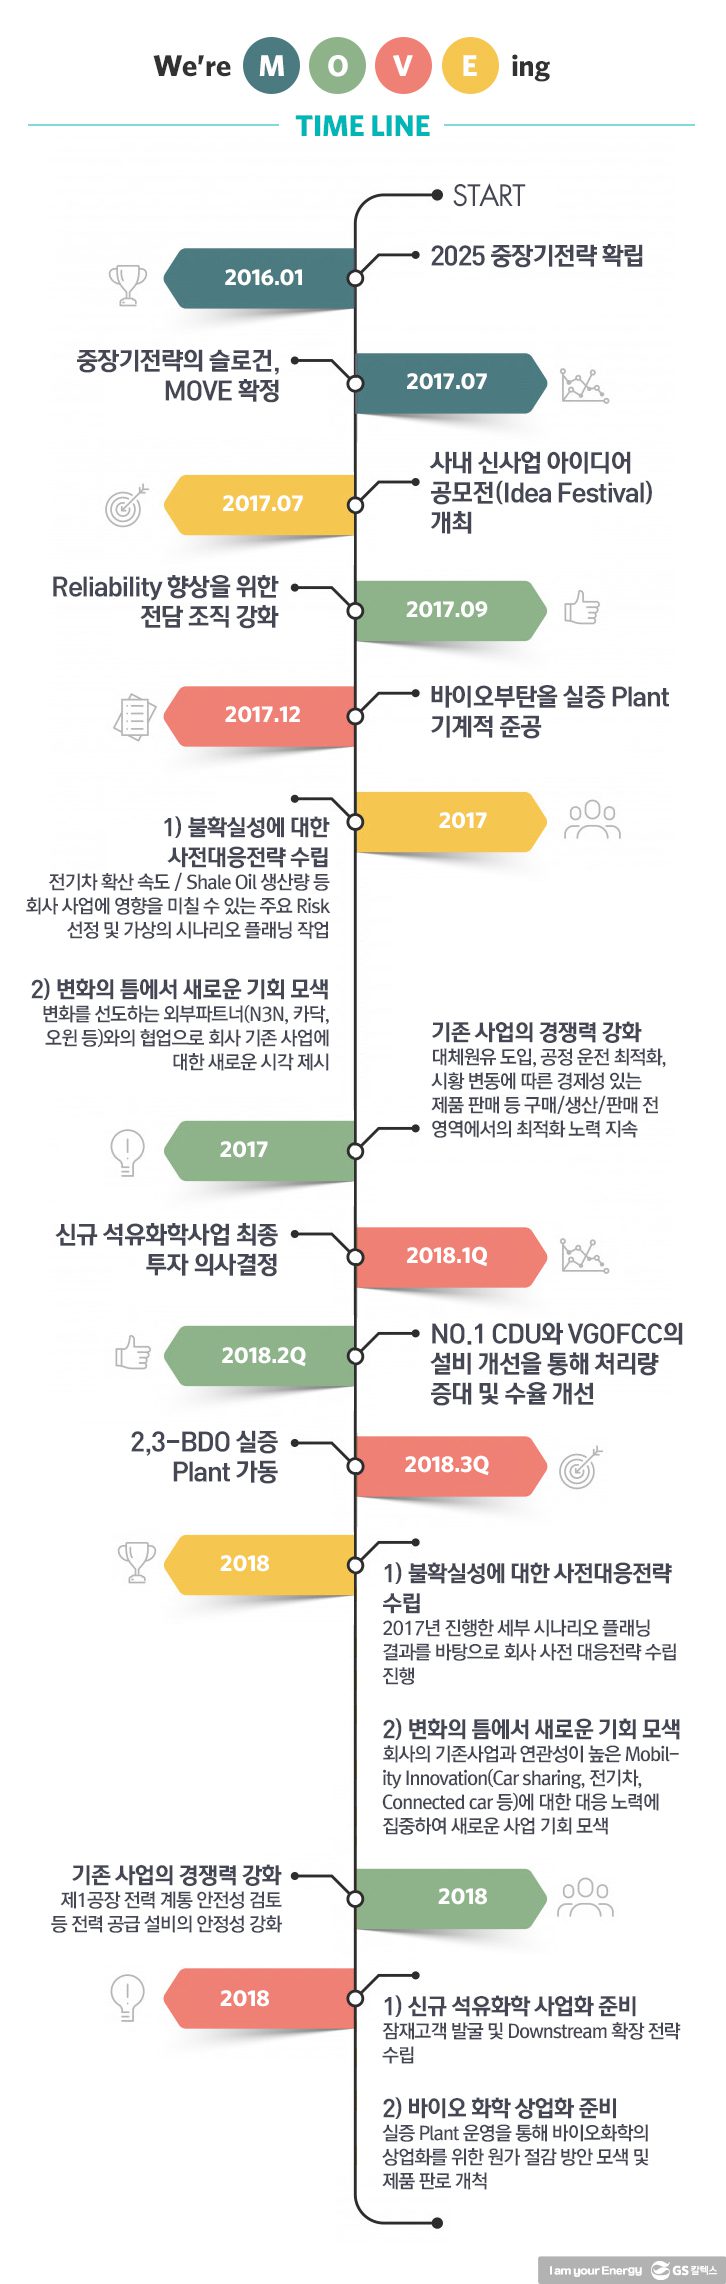 2018 Jan move 04 6 1월 기업소식, 매거진